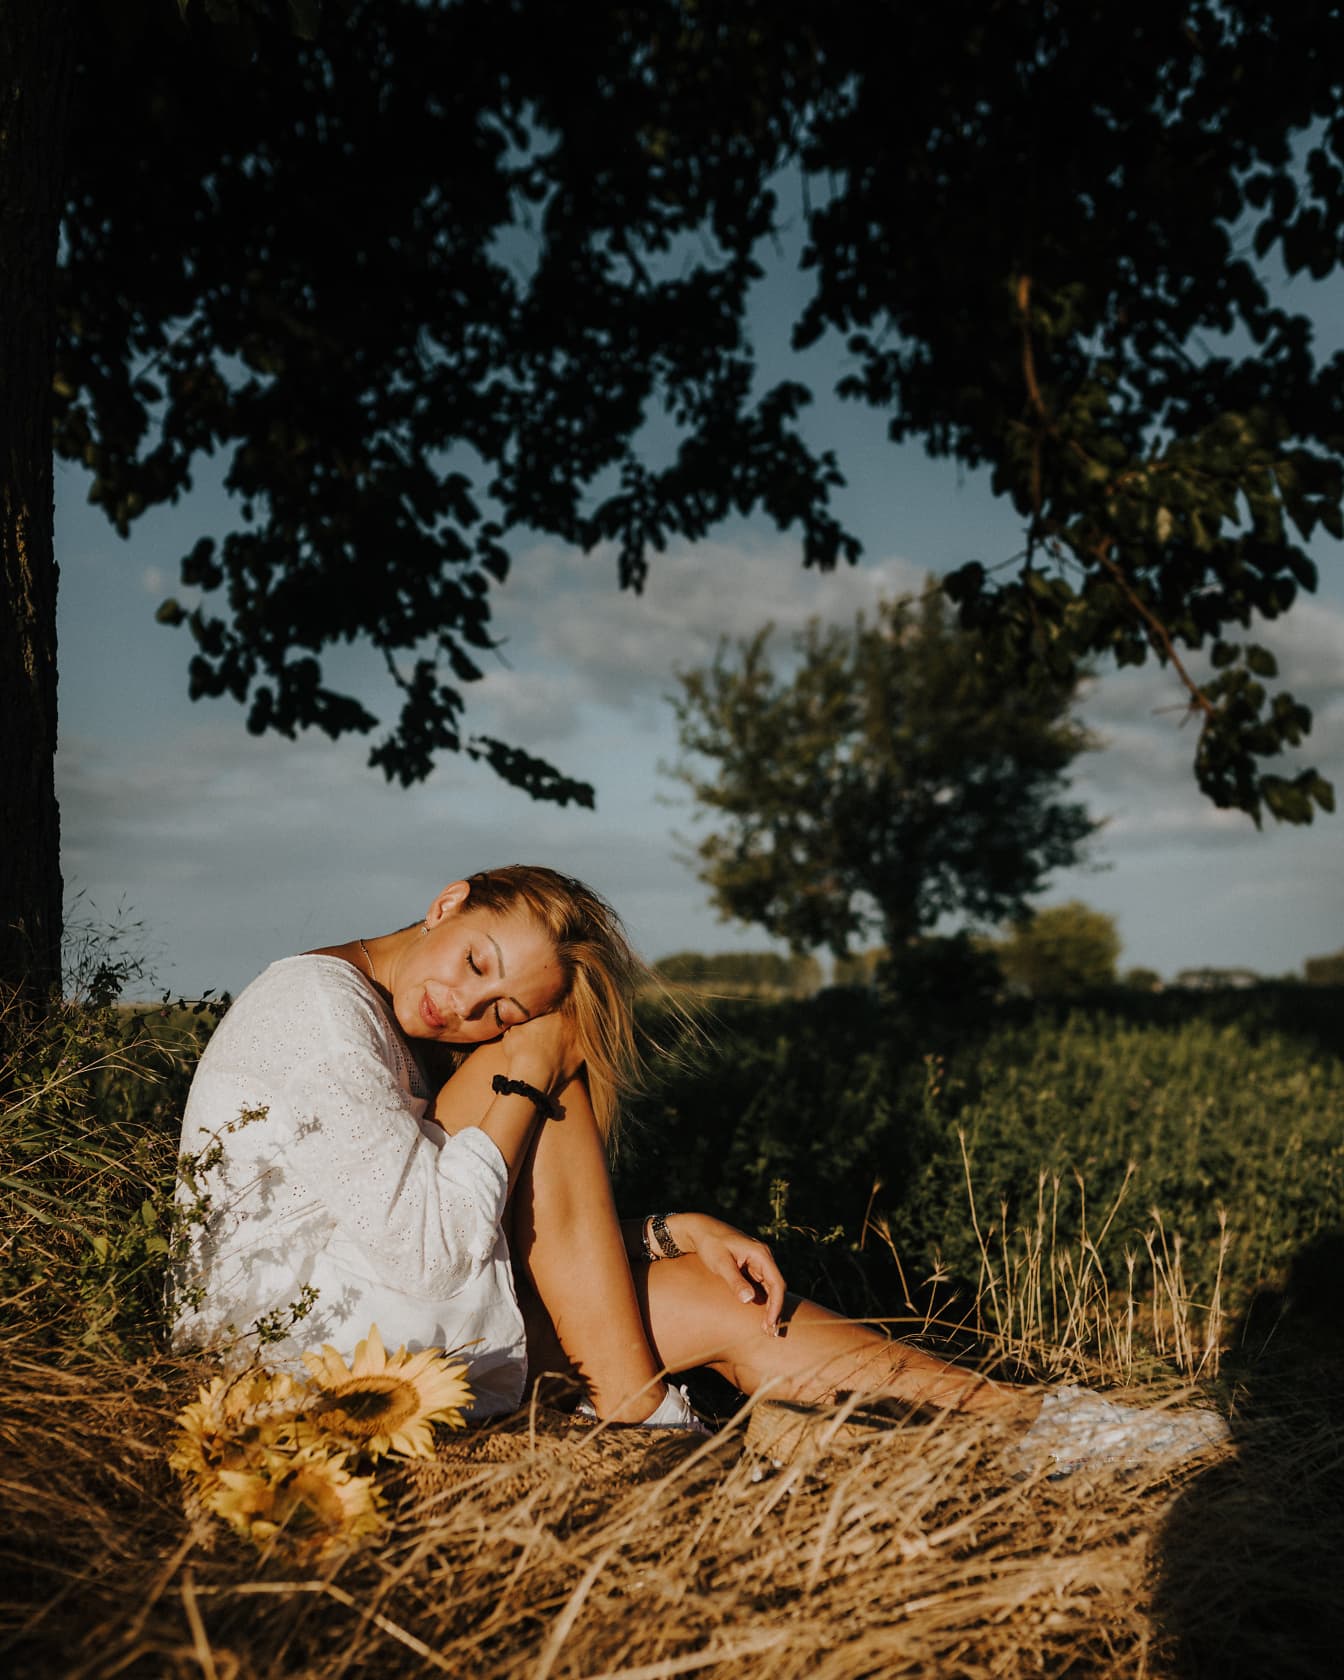 Pen blond kvinne som sitter på et jorde og soler seg med lukkede øyne